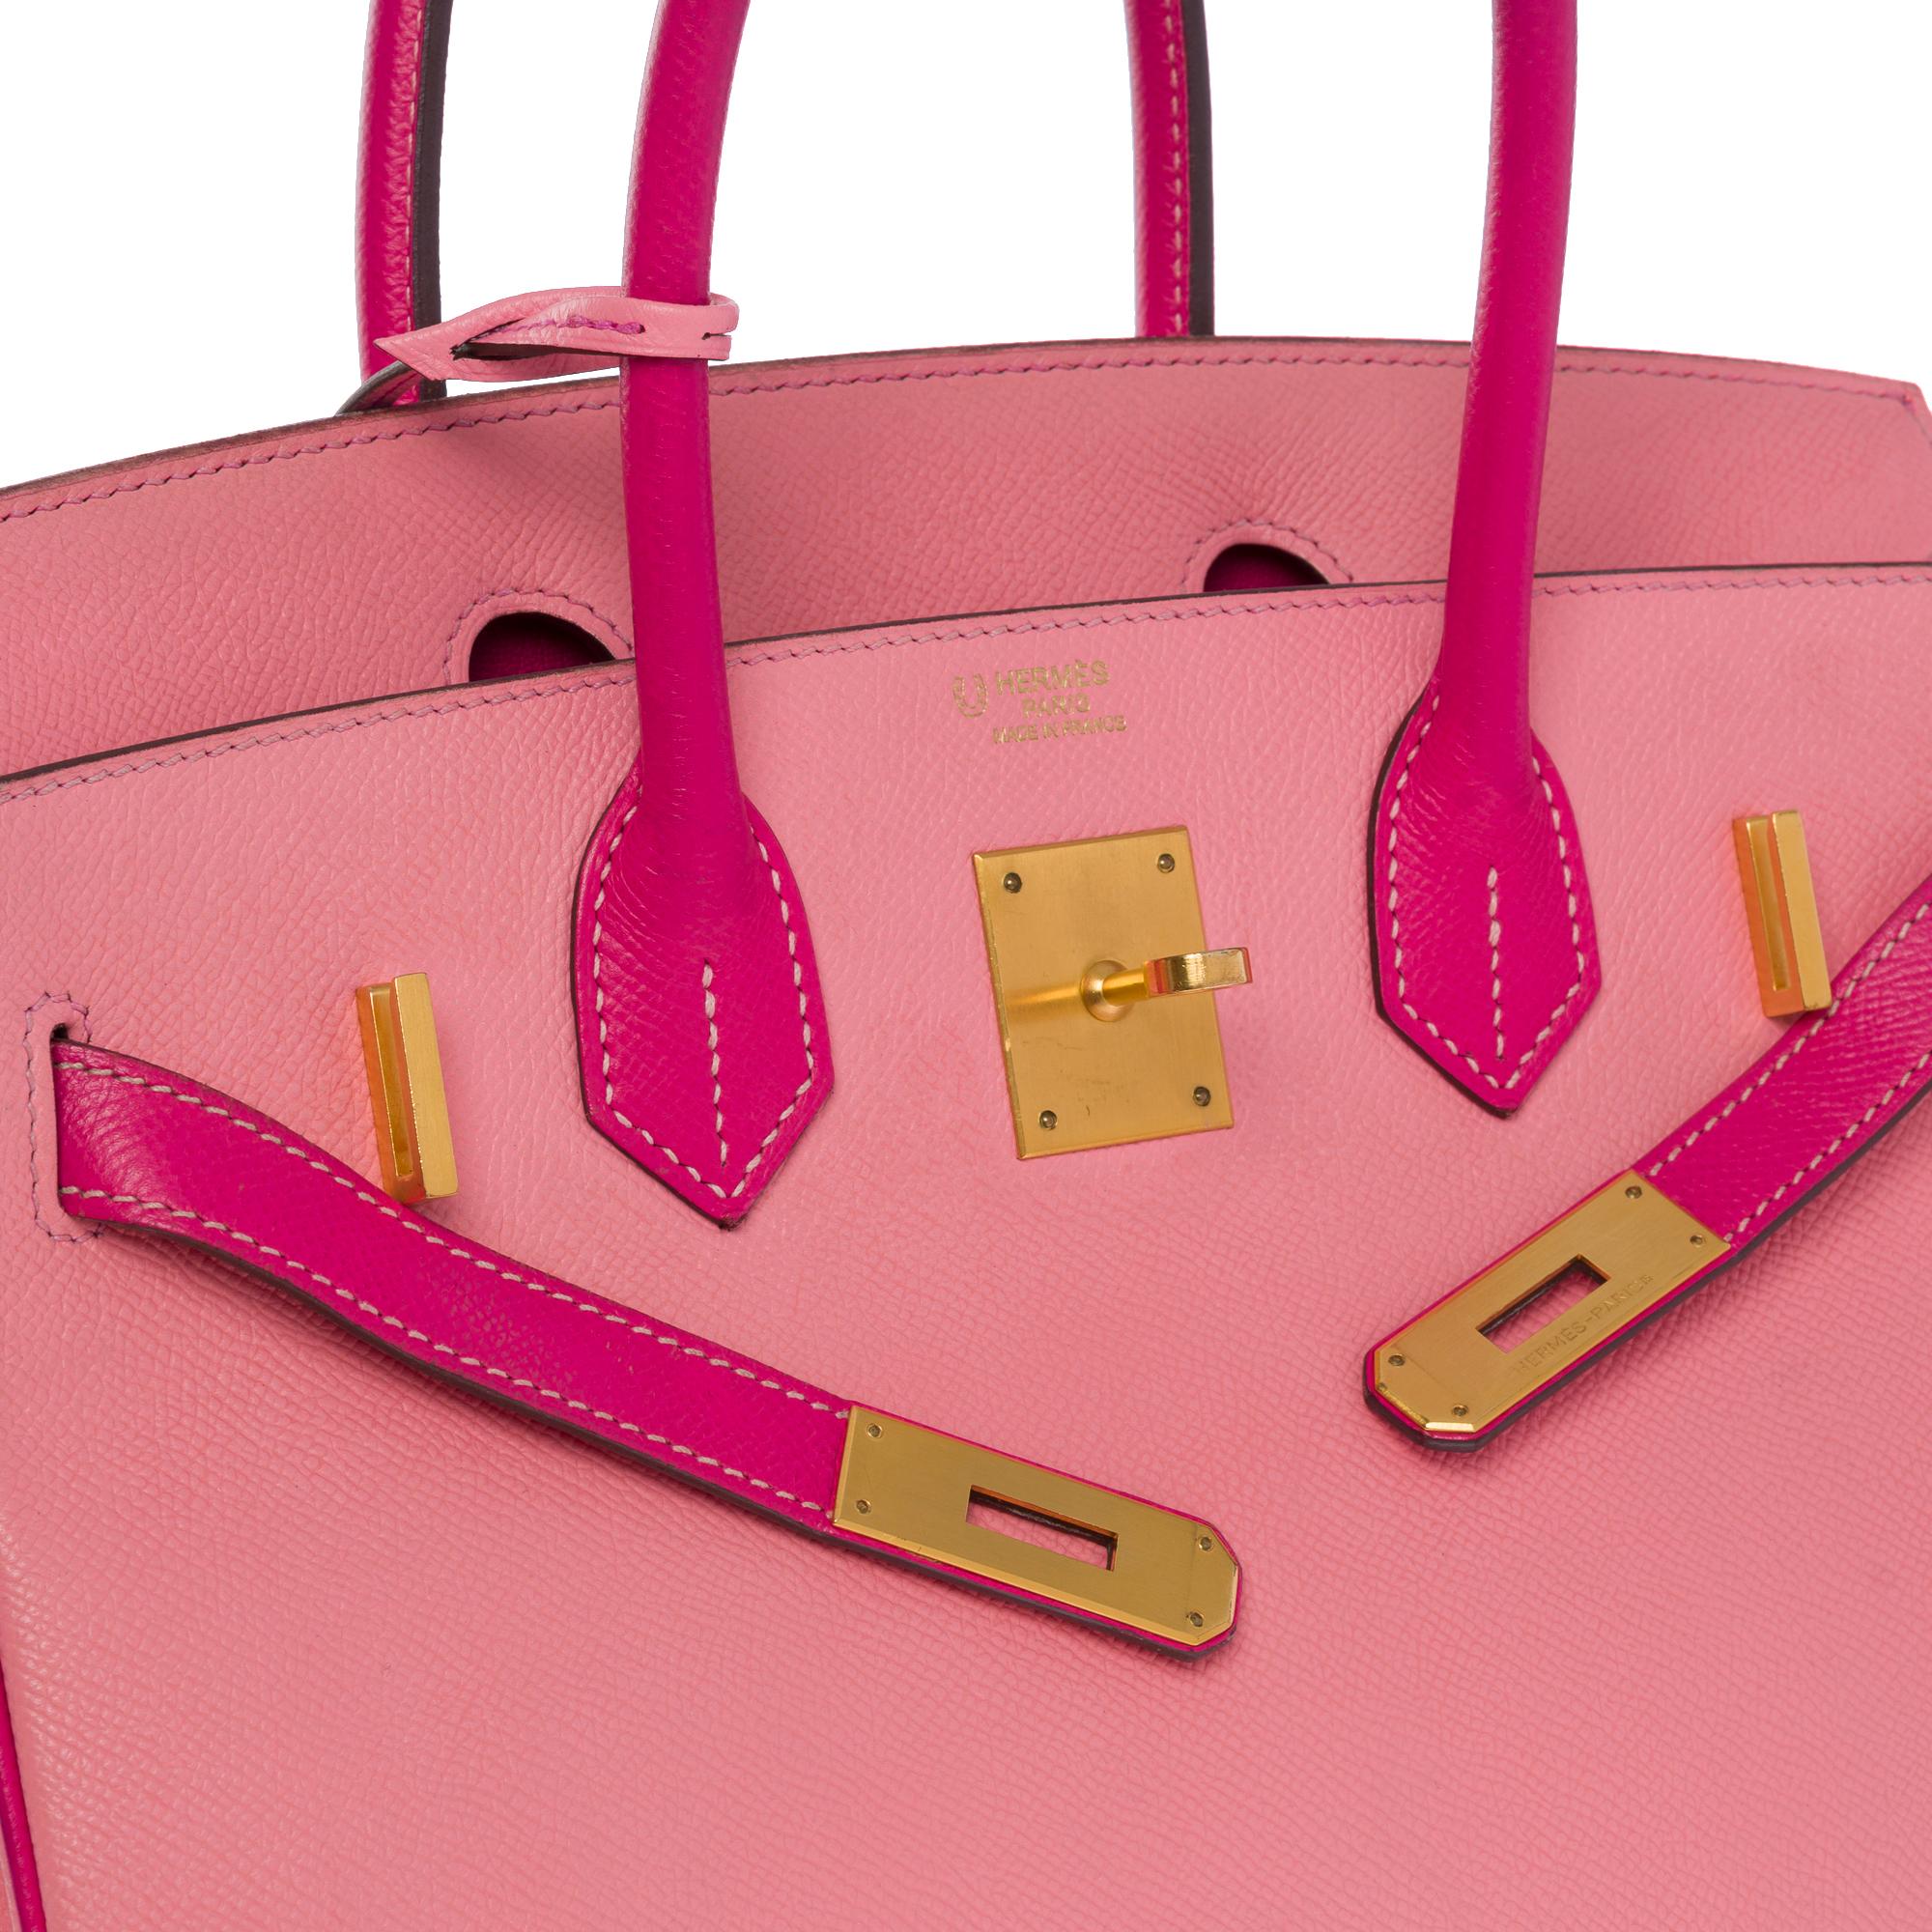  Rare Hermès Birkin 30 HSS Special Order handbag in Pink Epsom leather, BGHW For Sale 2